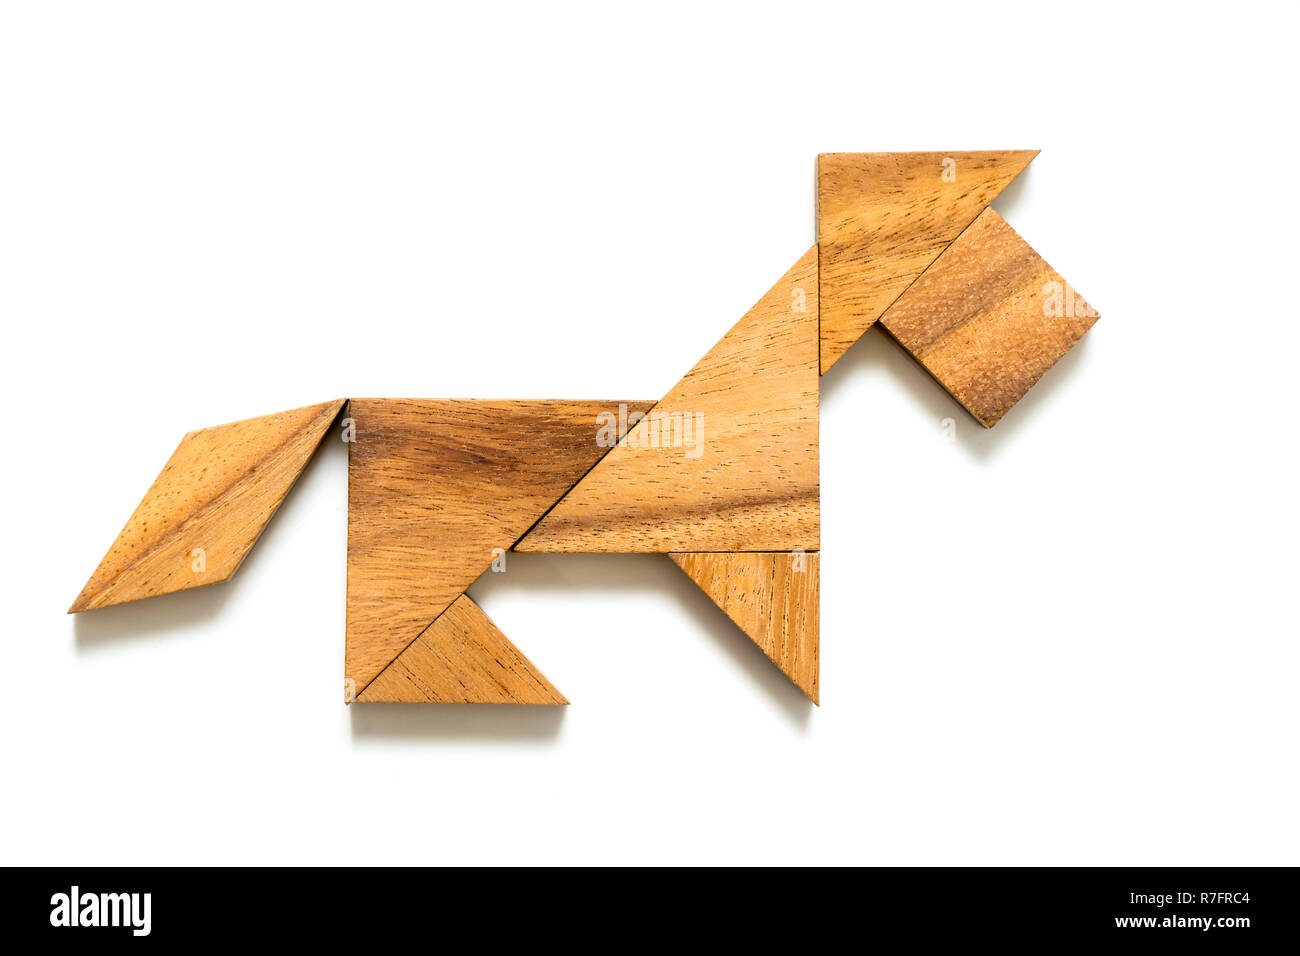 Holz tangram Puzzle Hund oder Lion Form auf weißem Hintergrund  Stockfotografie - Alamy